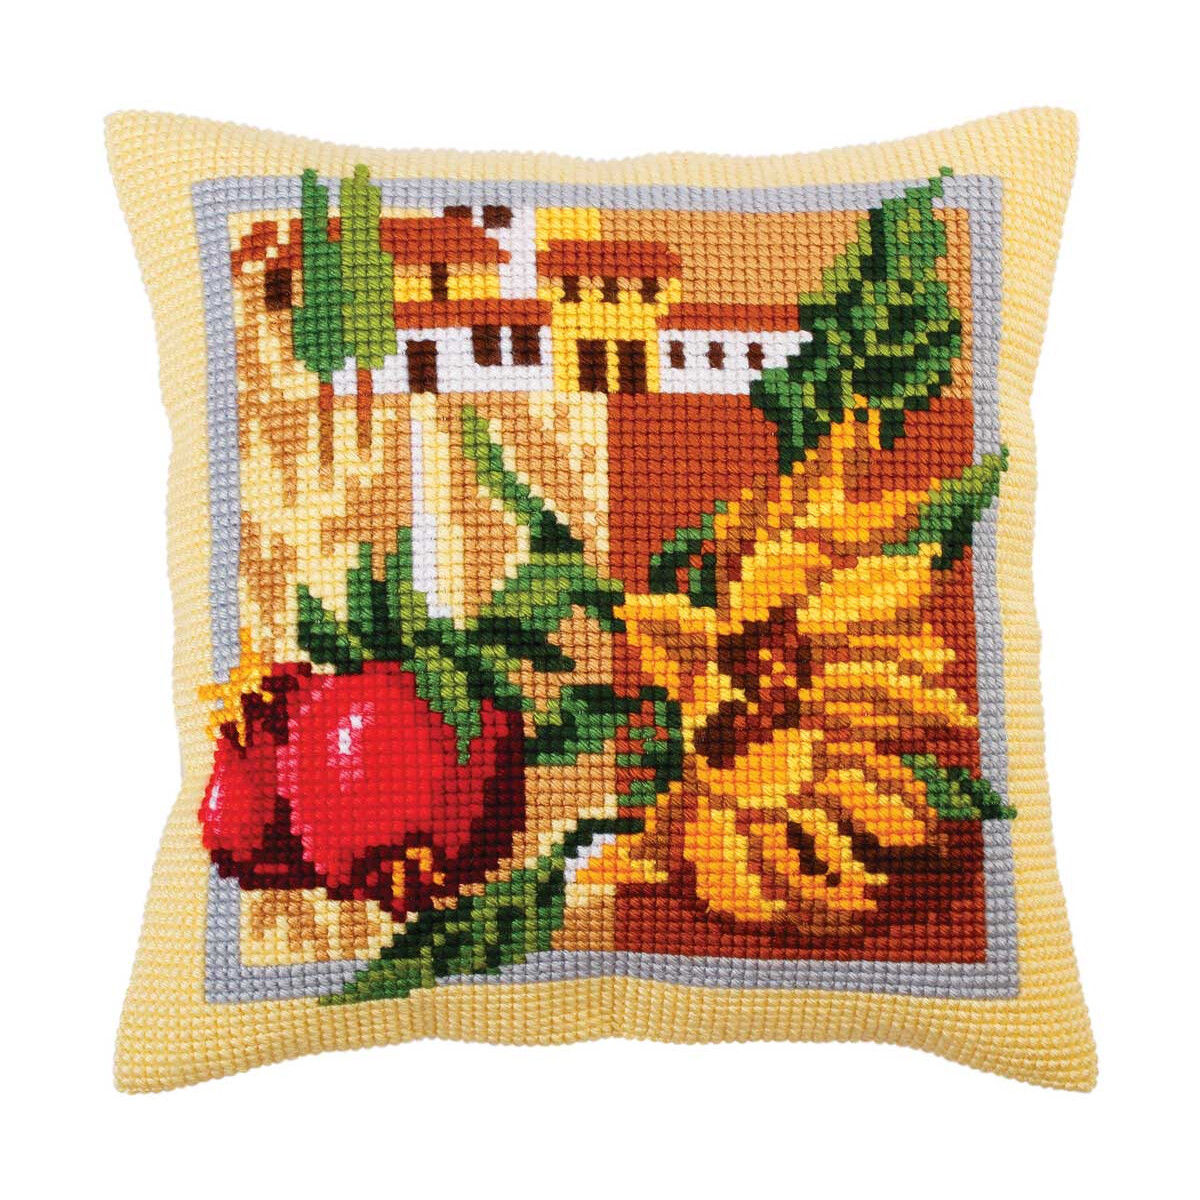 CdA stamped cross stitch kit cushion "Tuscany "...